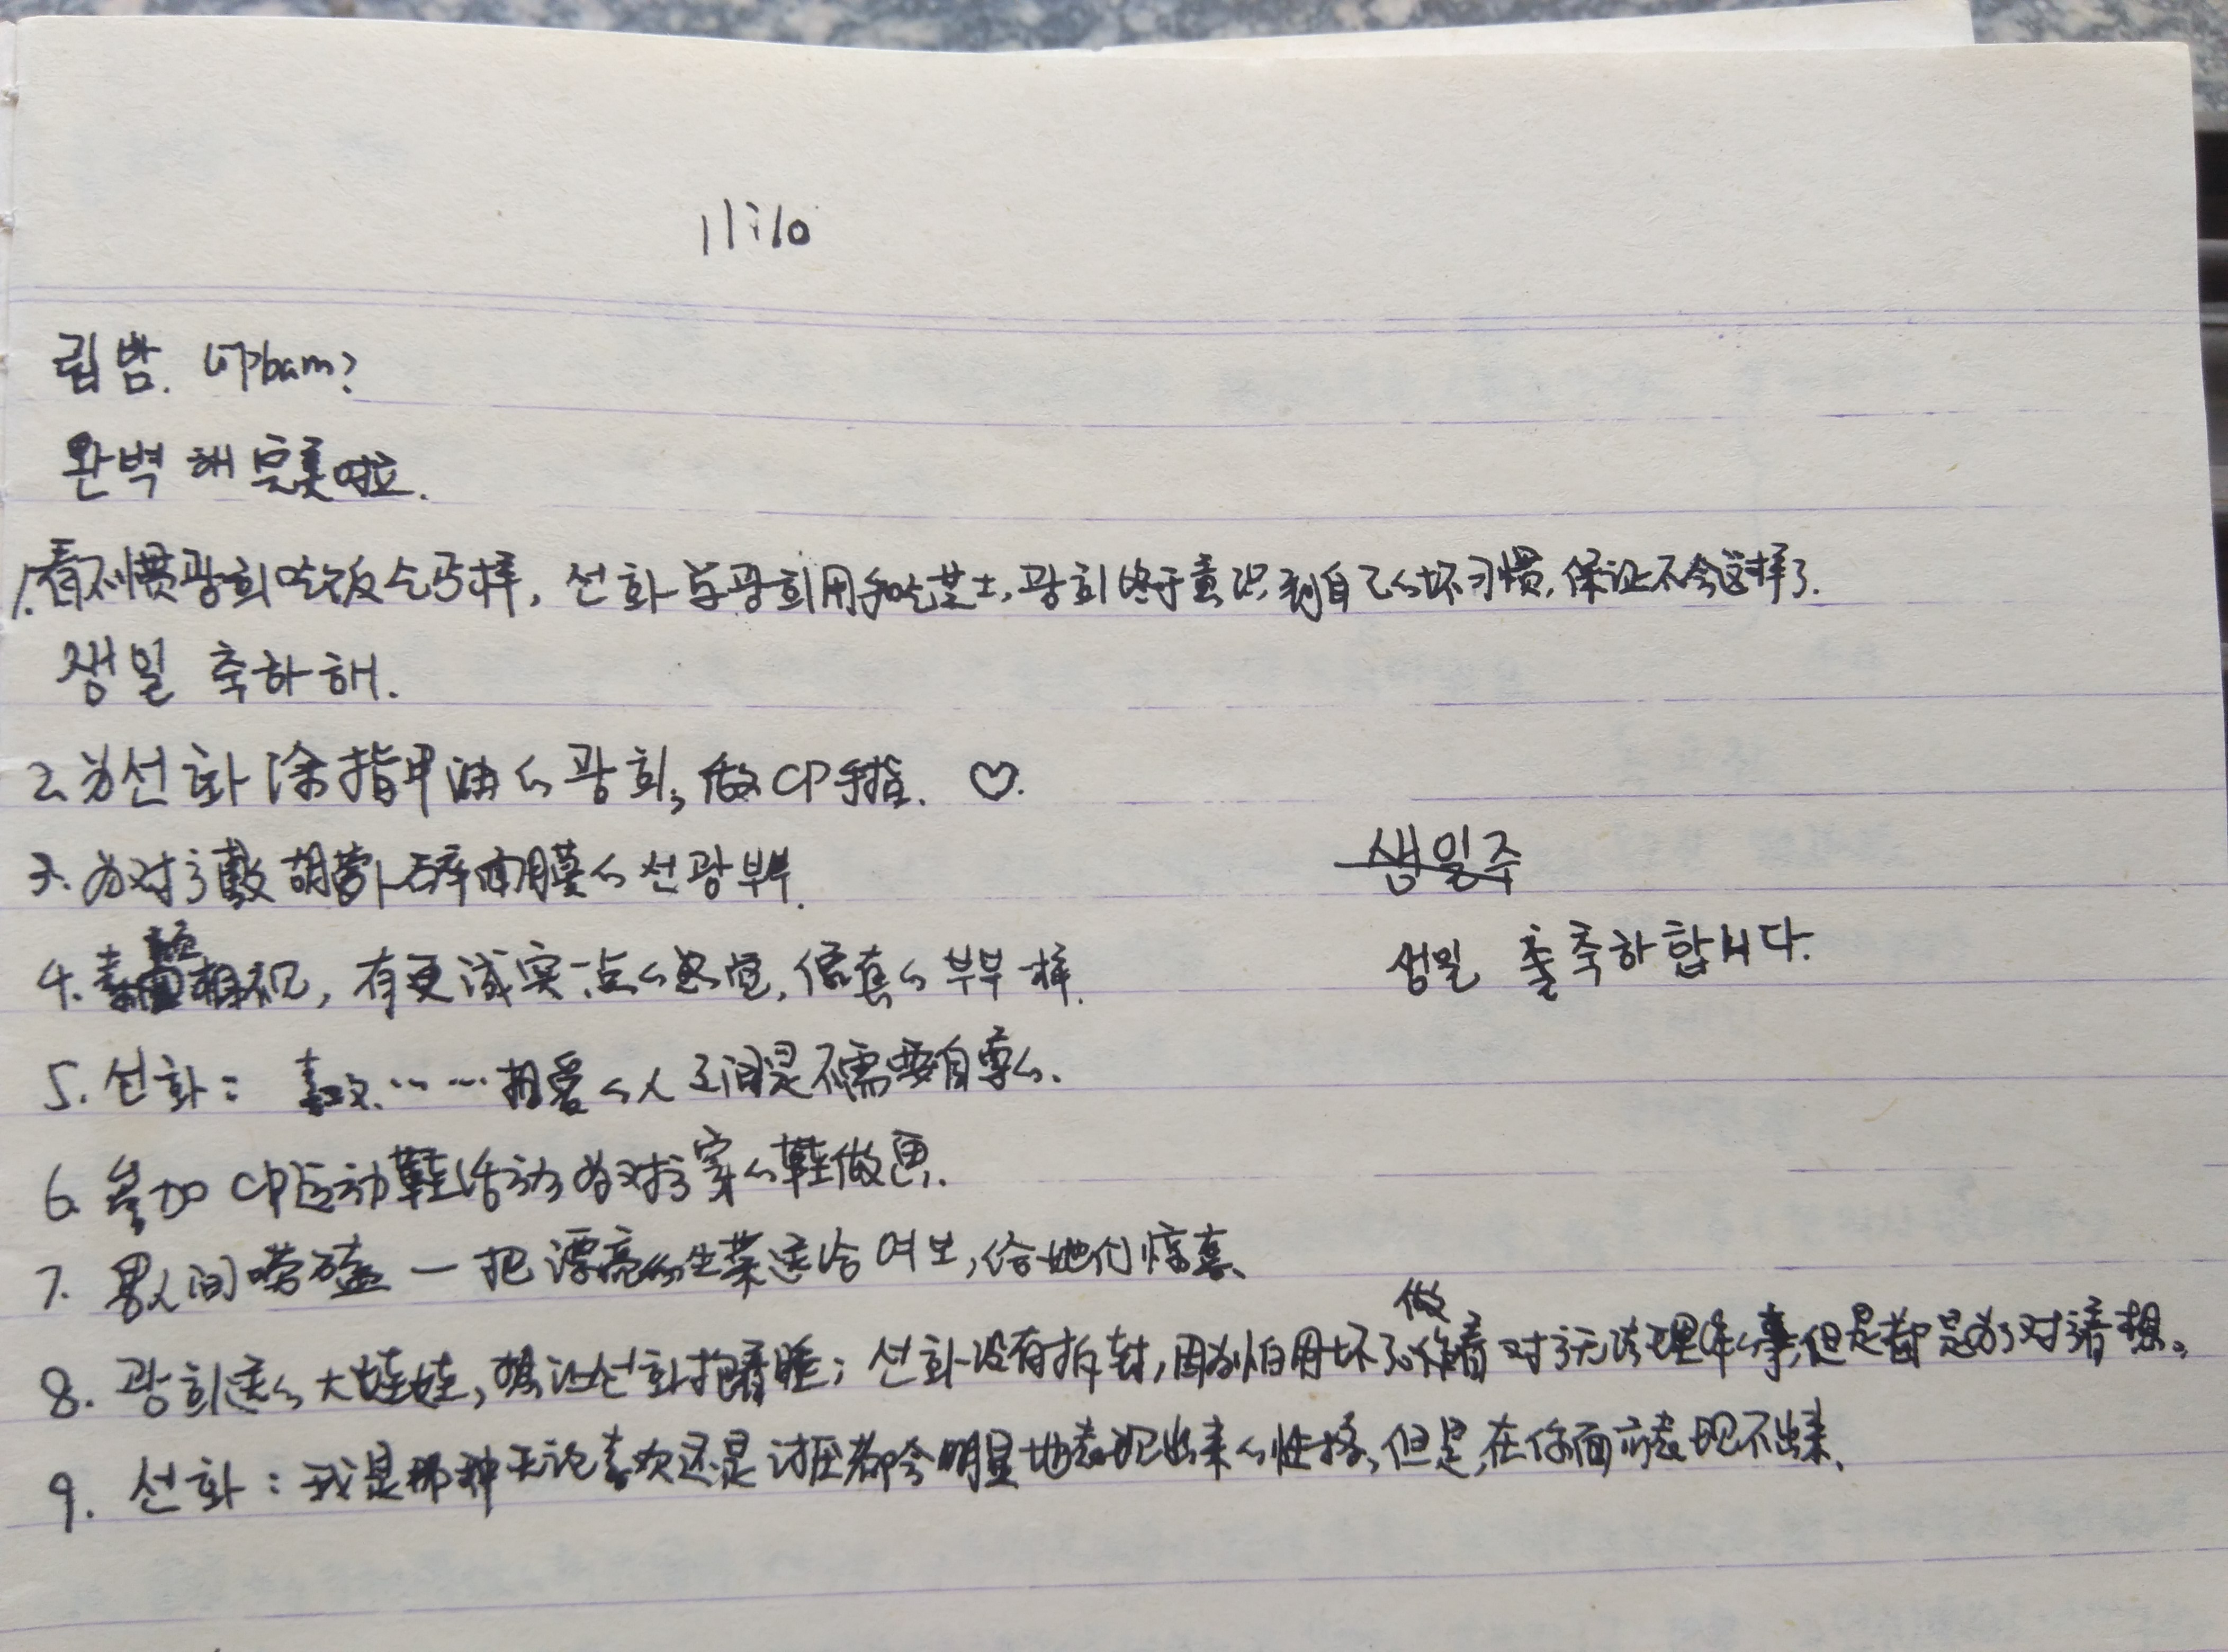 韩语自学阶段笔记分享 -韩小冷的日志大全- 沪